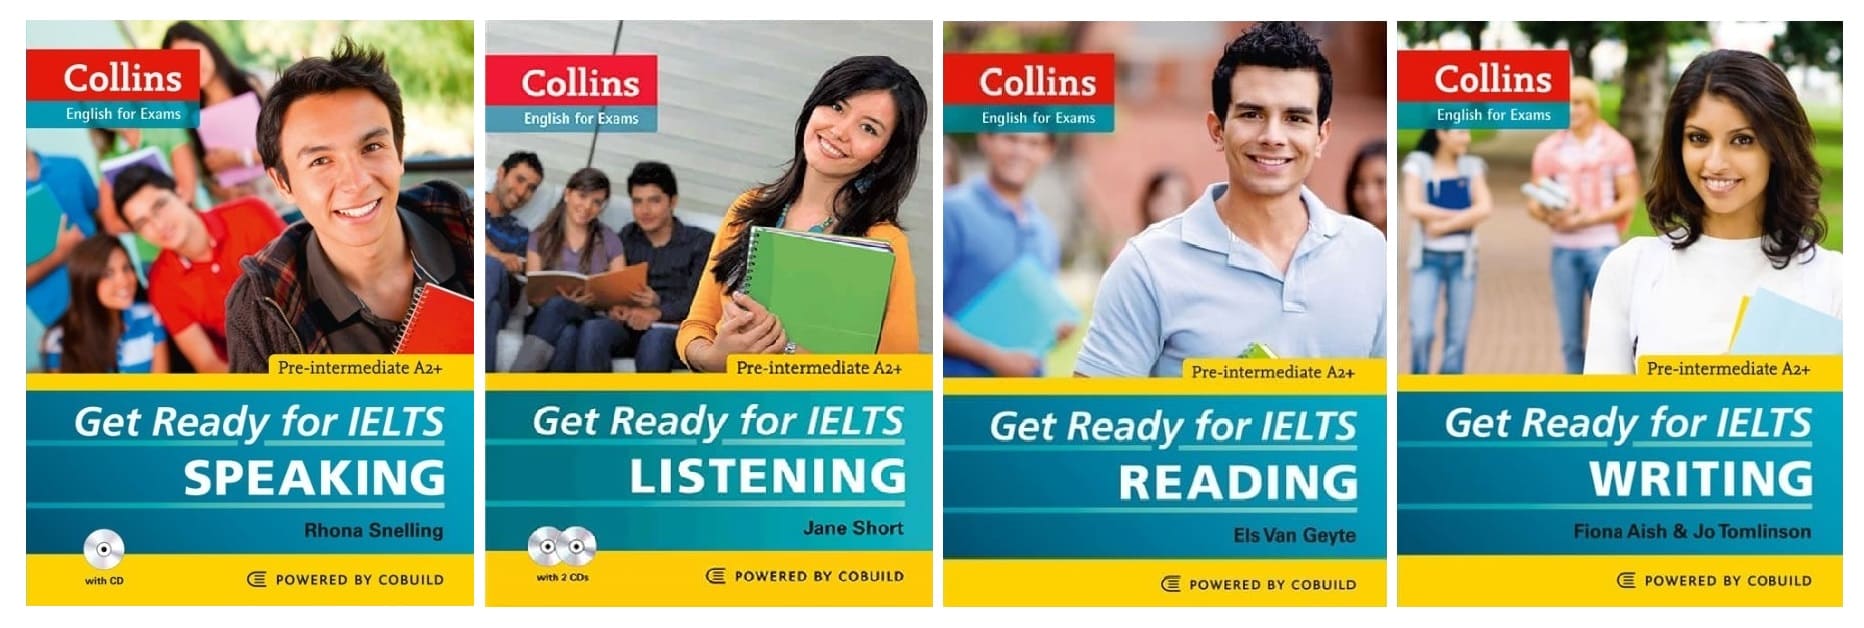 خرید کتاب زبان | کتاب زبان آیلتس | Collins Get Ready for IELTS Pre Intermediate | کالینز گت ردی فور آیلتس پری اینترمدیت